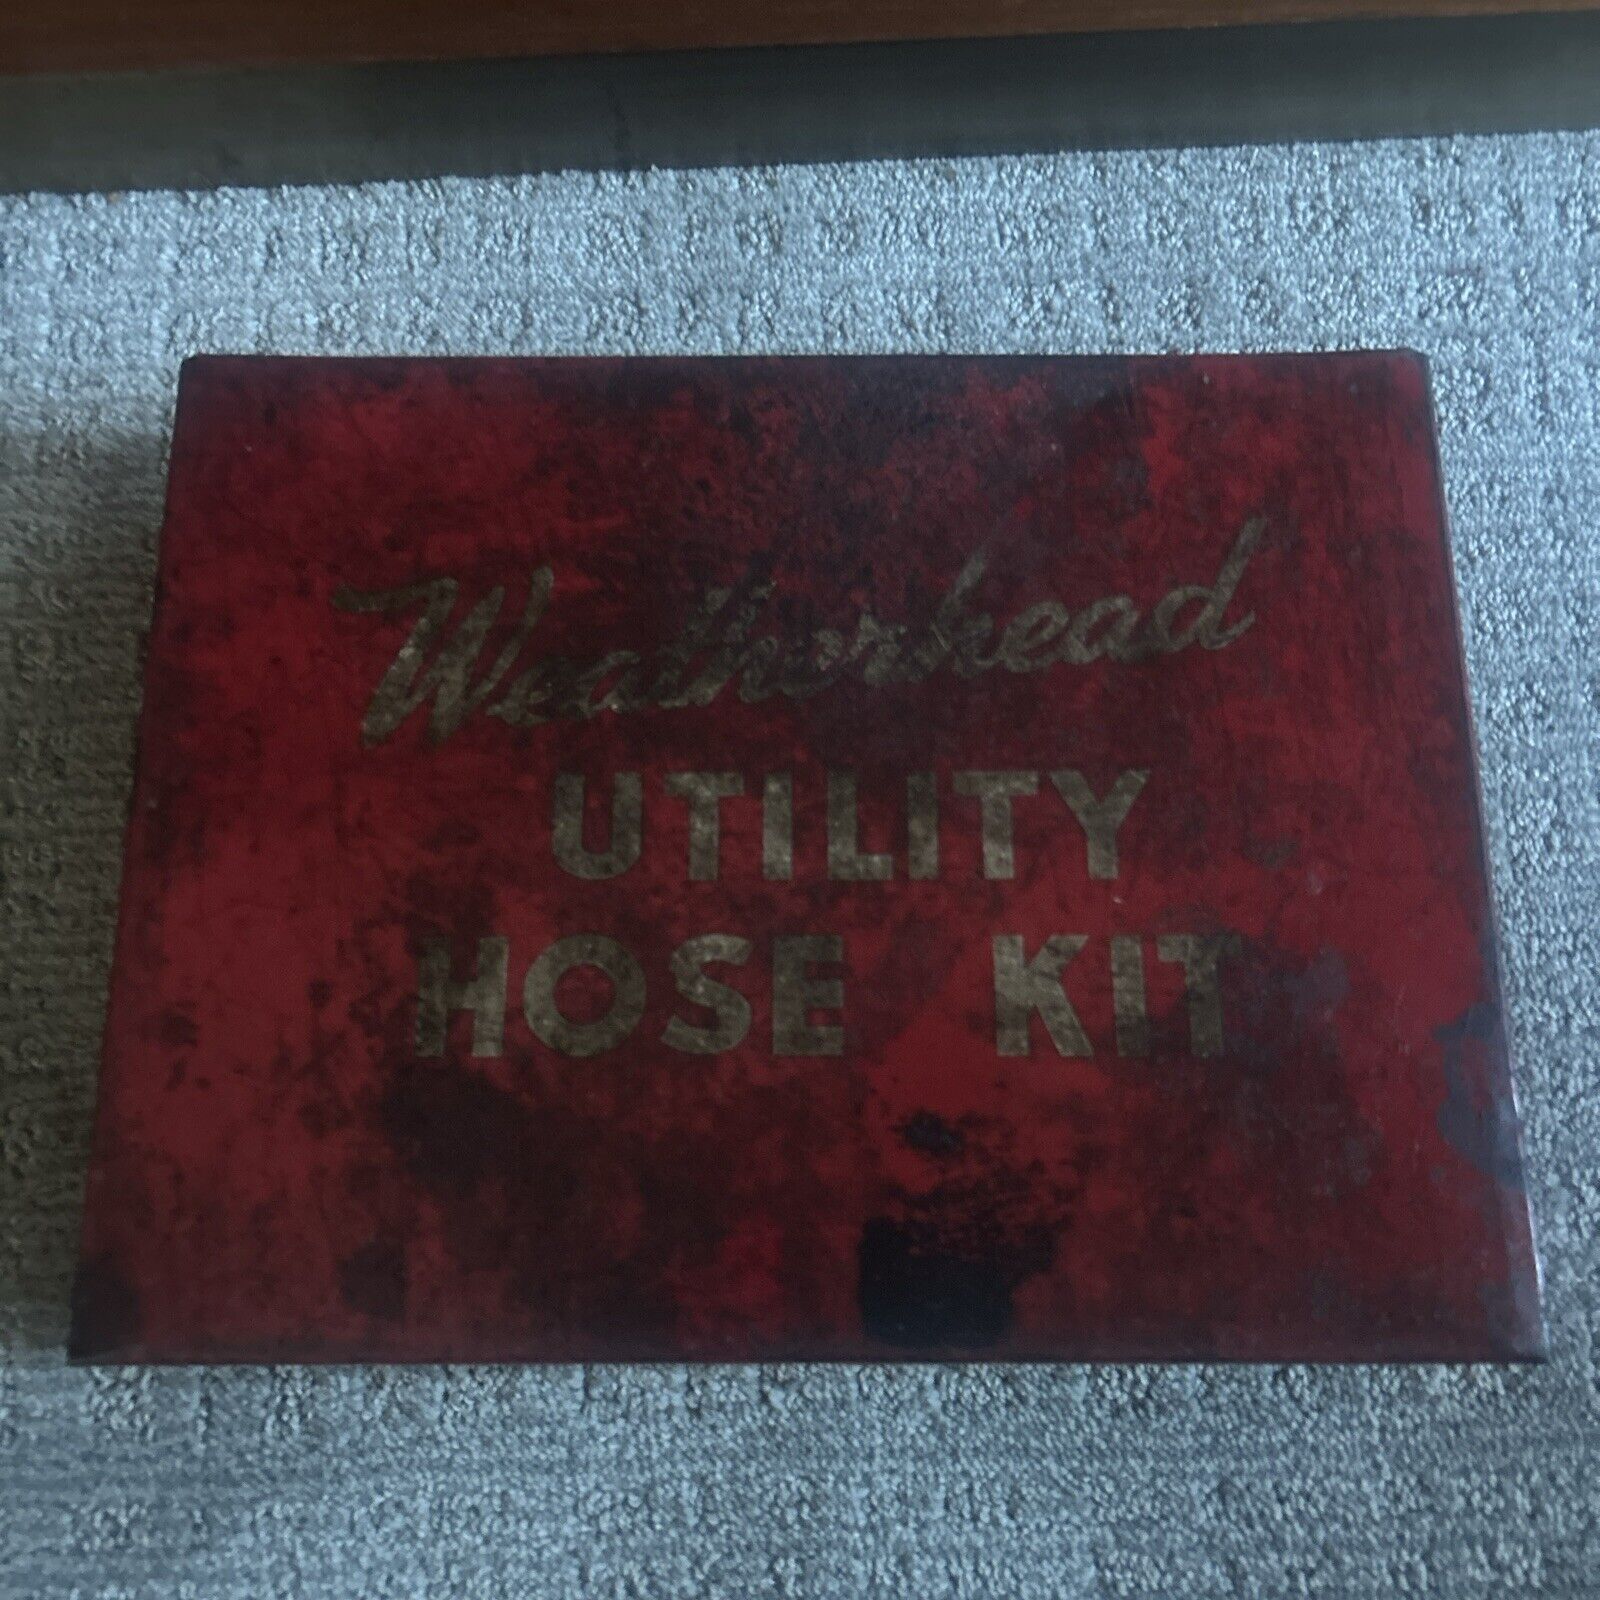 Vintage Weatherhead Utility Hose Kit Metal Box